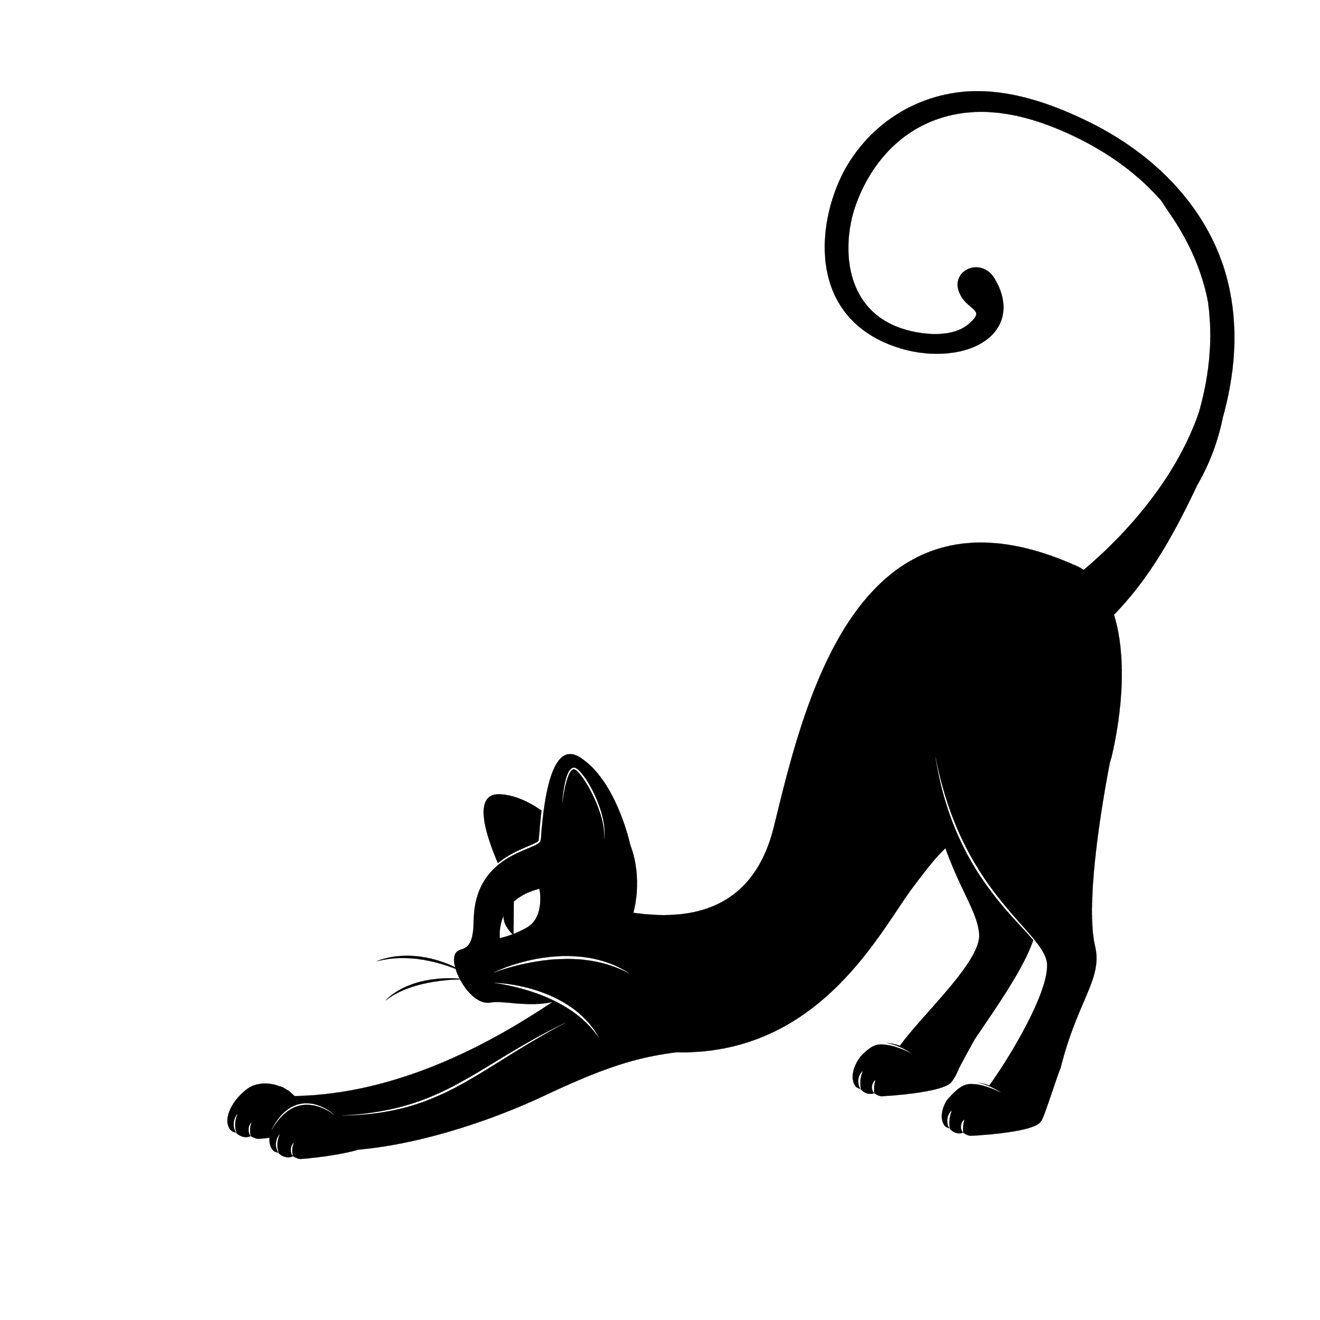 Силуэт кошки с выгнутой спиной